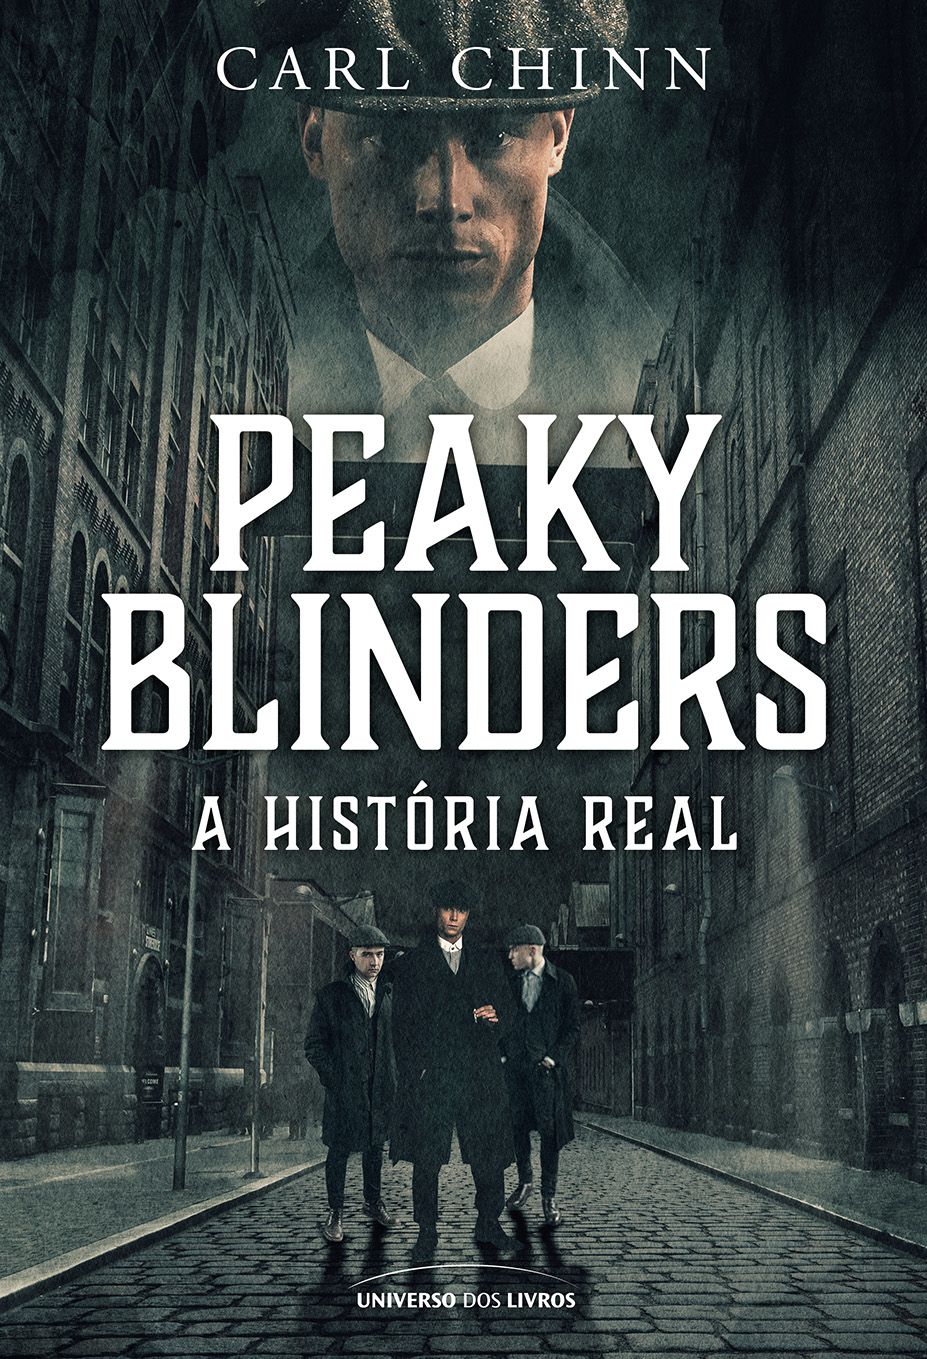 Os Peaky Blinders existiram? A história real por trás da série